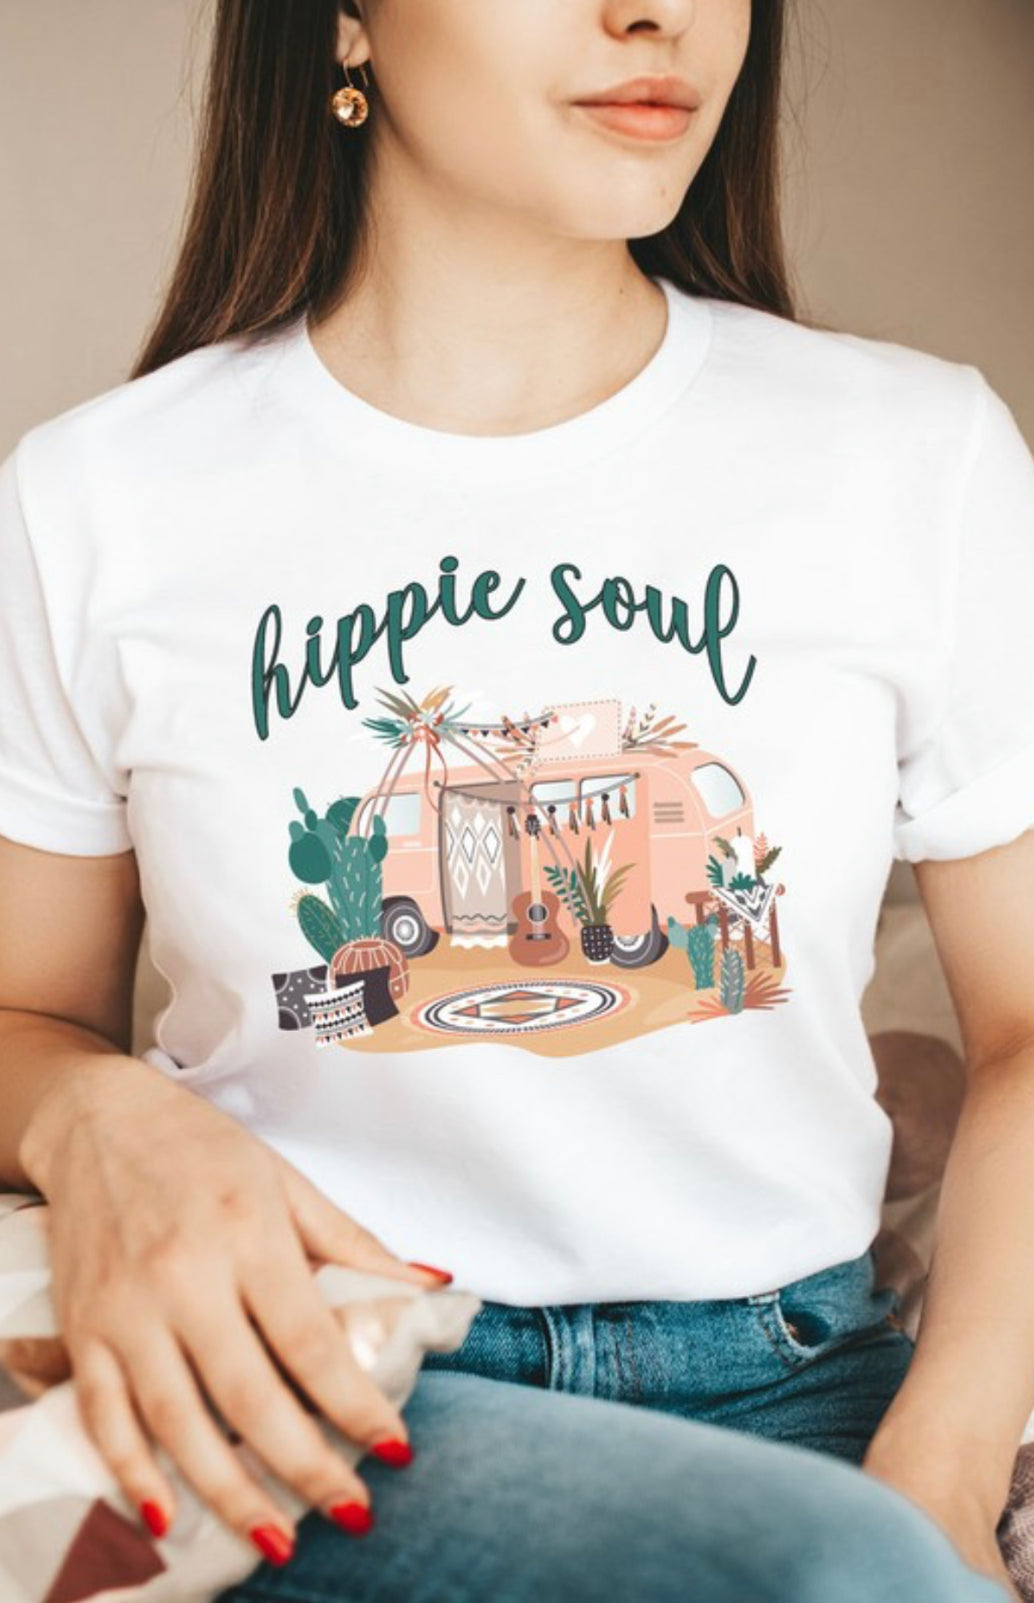 Hippie Soul Tee